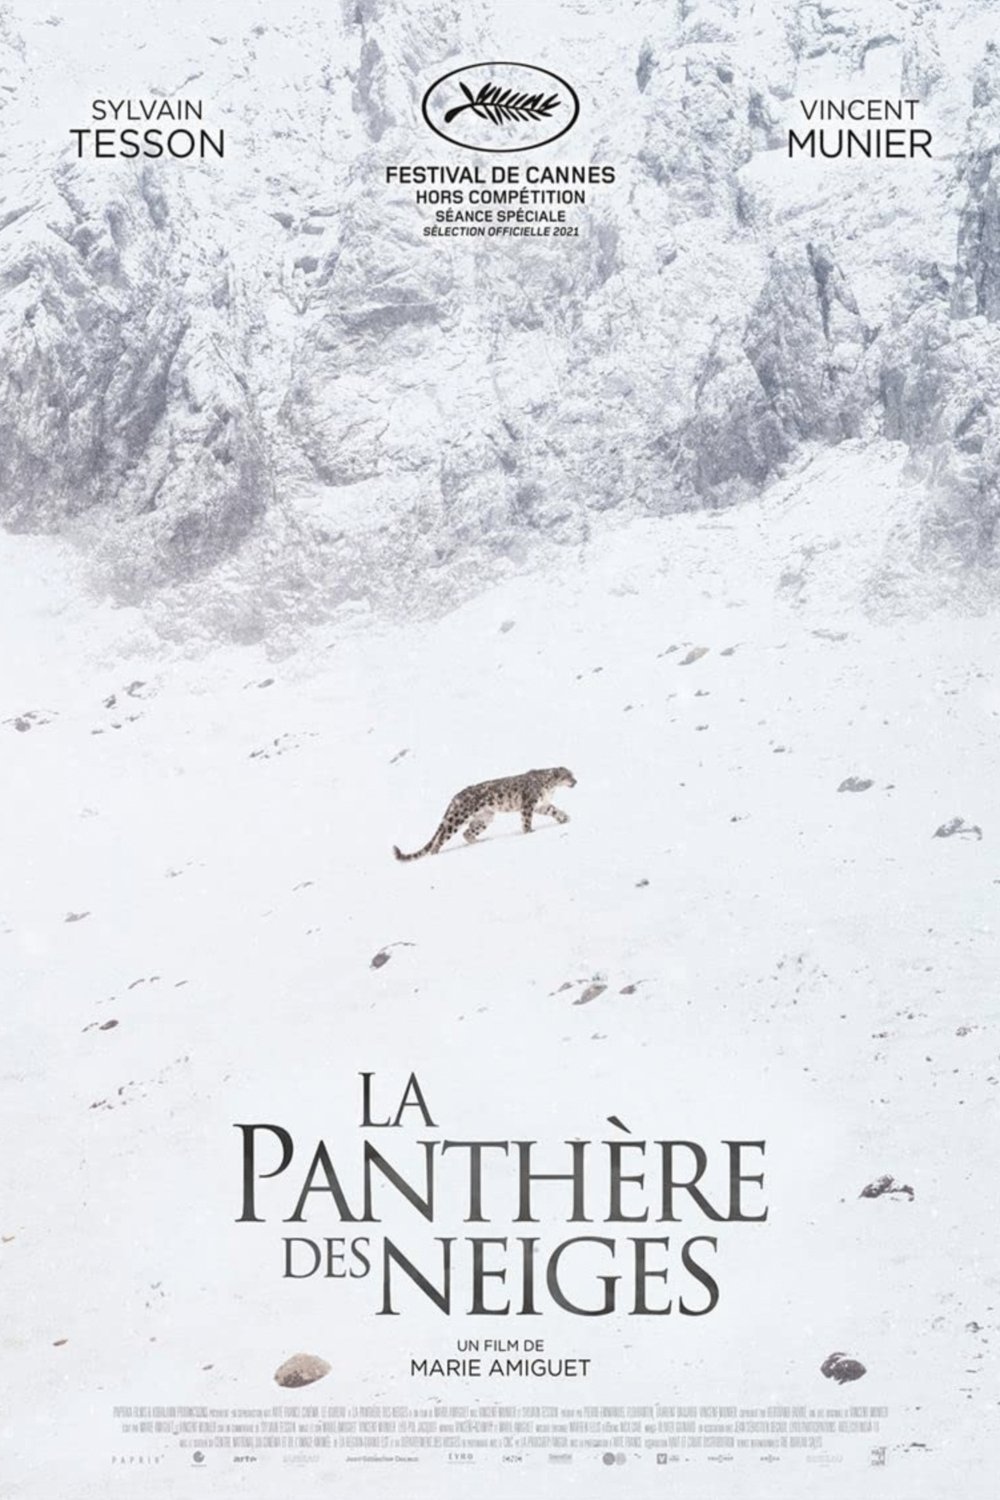 Poster of the movie La panthère des neiges